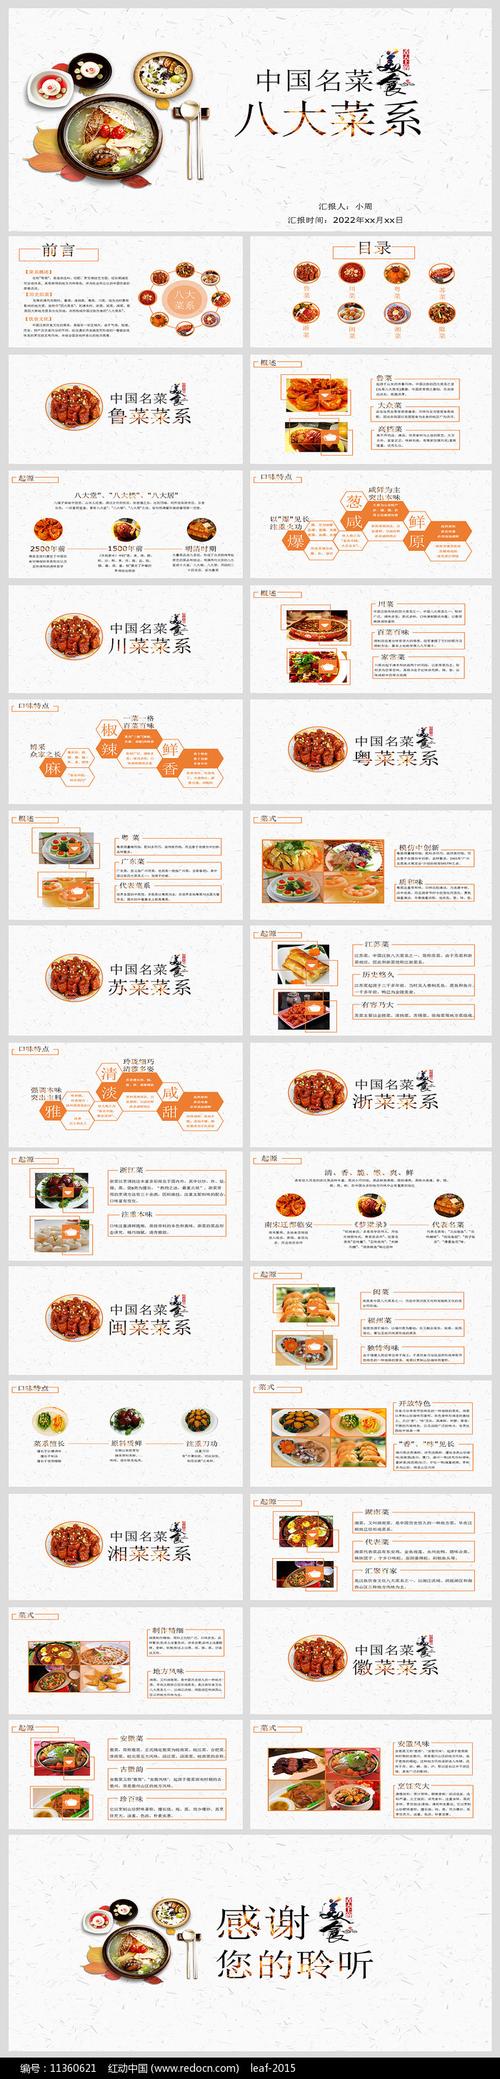 中国传统美食文化介绍ppt模板